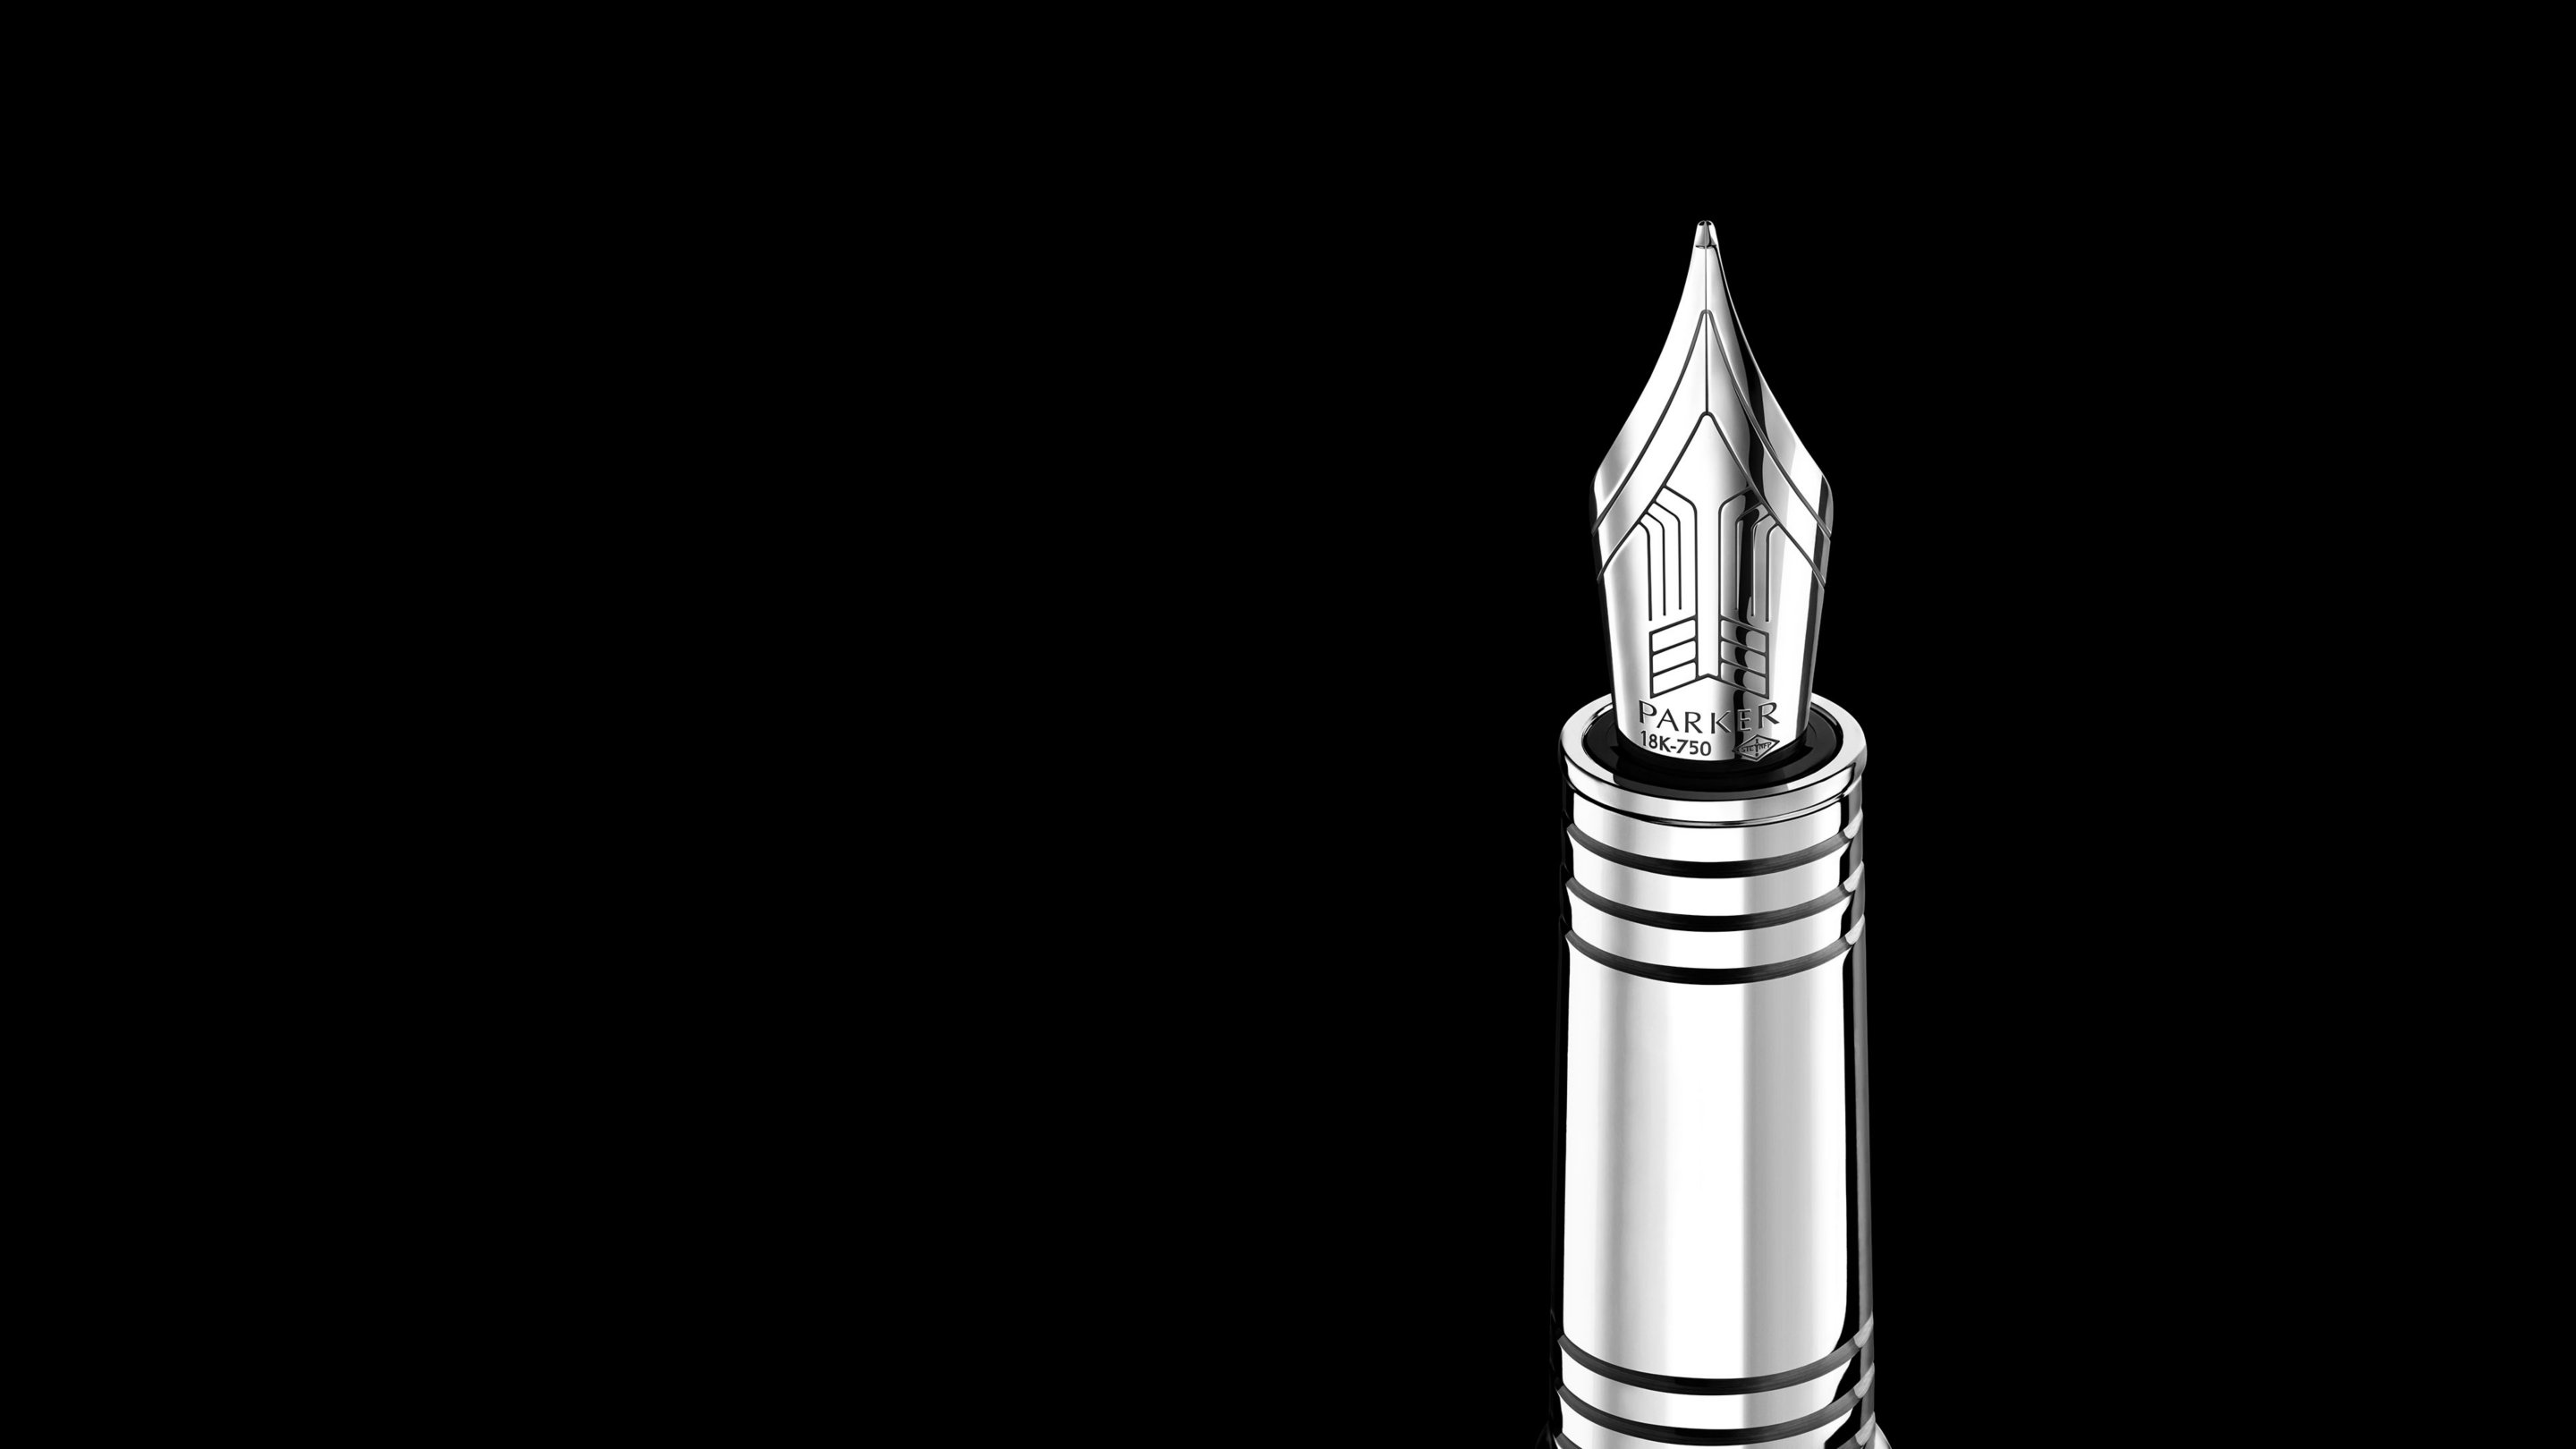 Closeup of an engraved fountain pen nib and barrel.